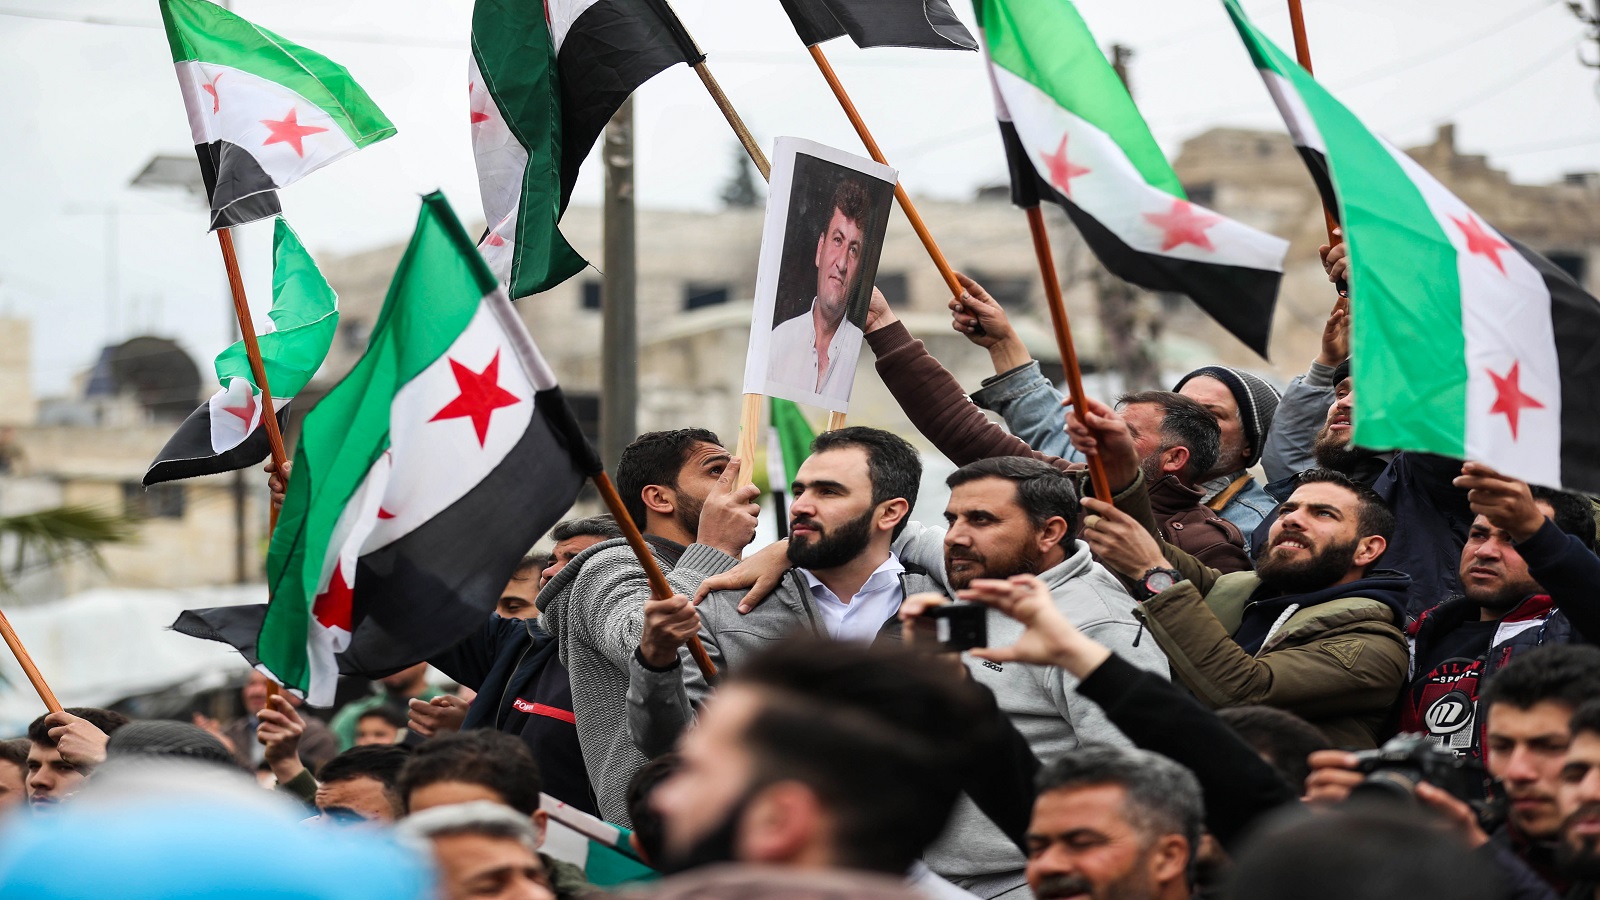 سوريا 2019.. عام المعارك و الكارثة الاقتصادية